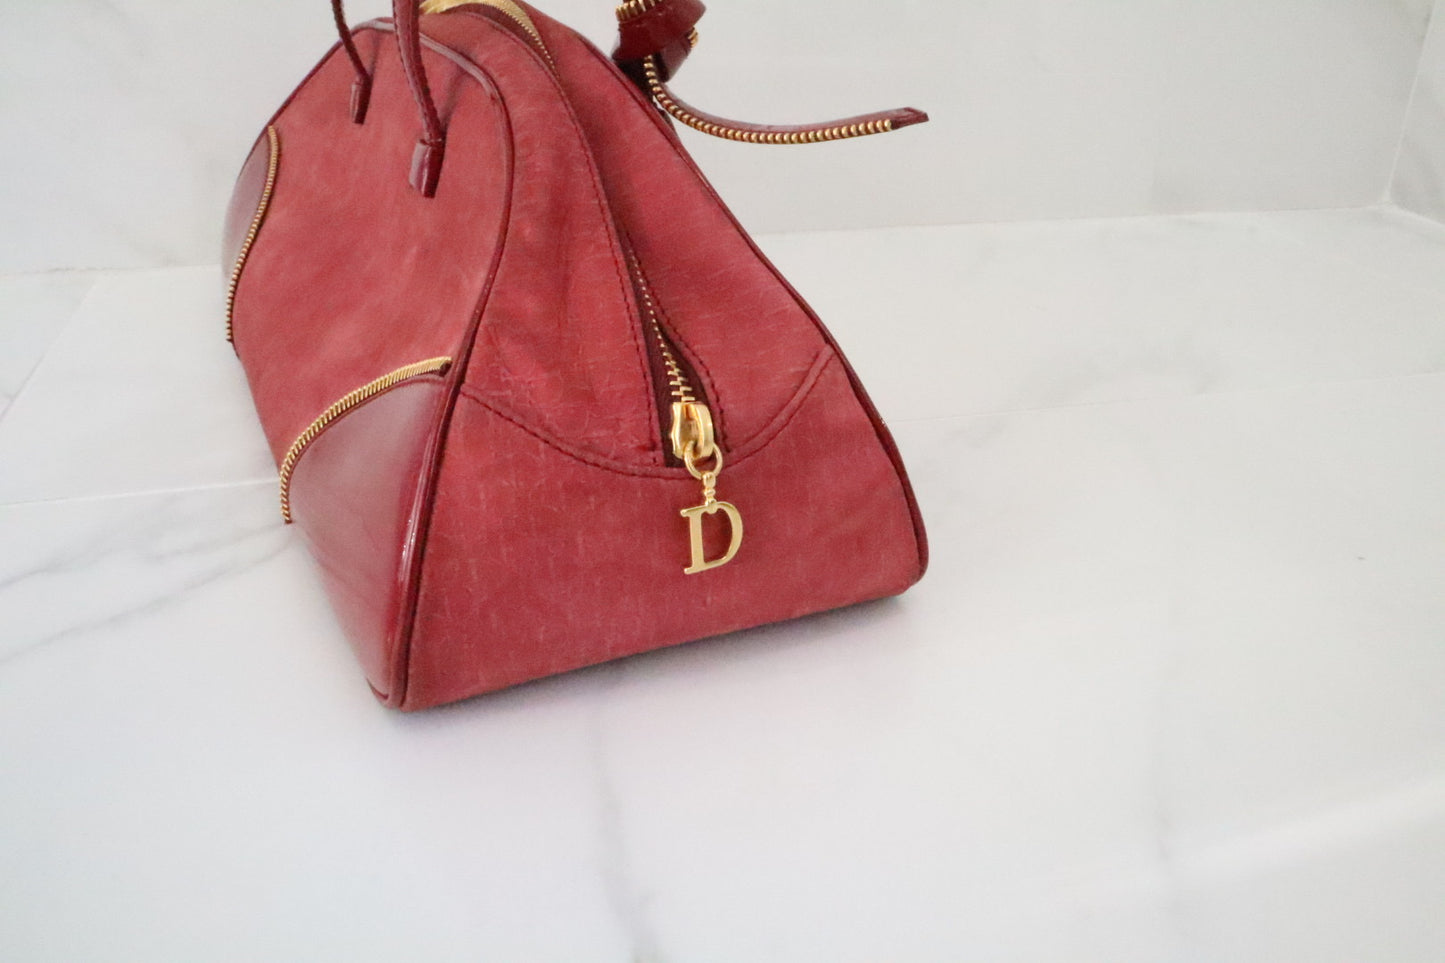 Vintage Christian Dior bag